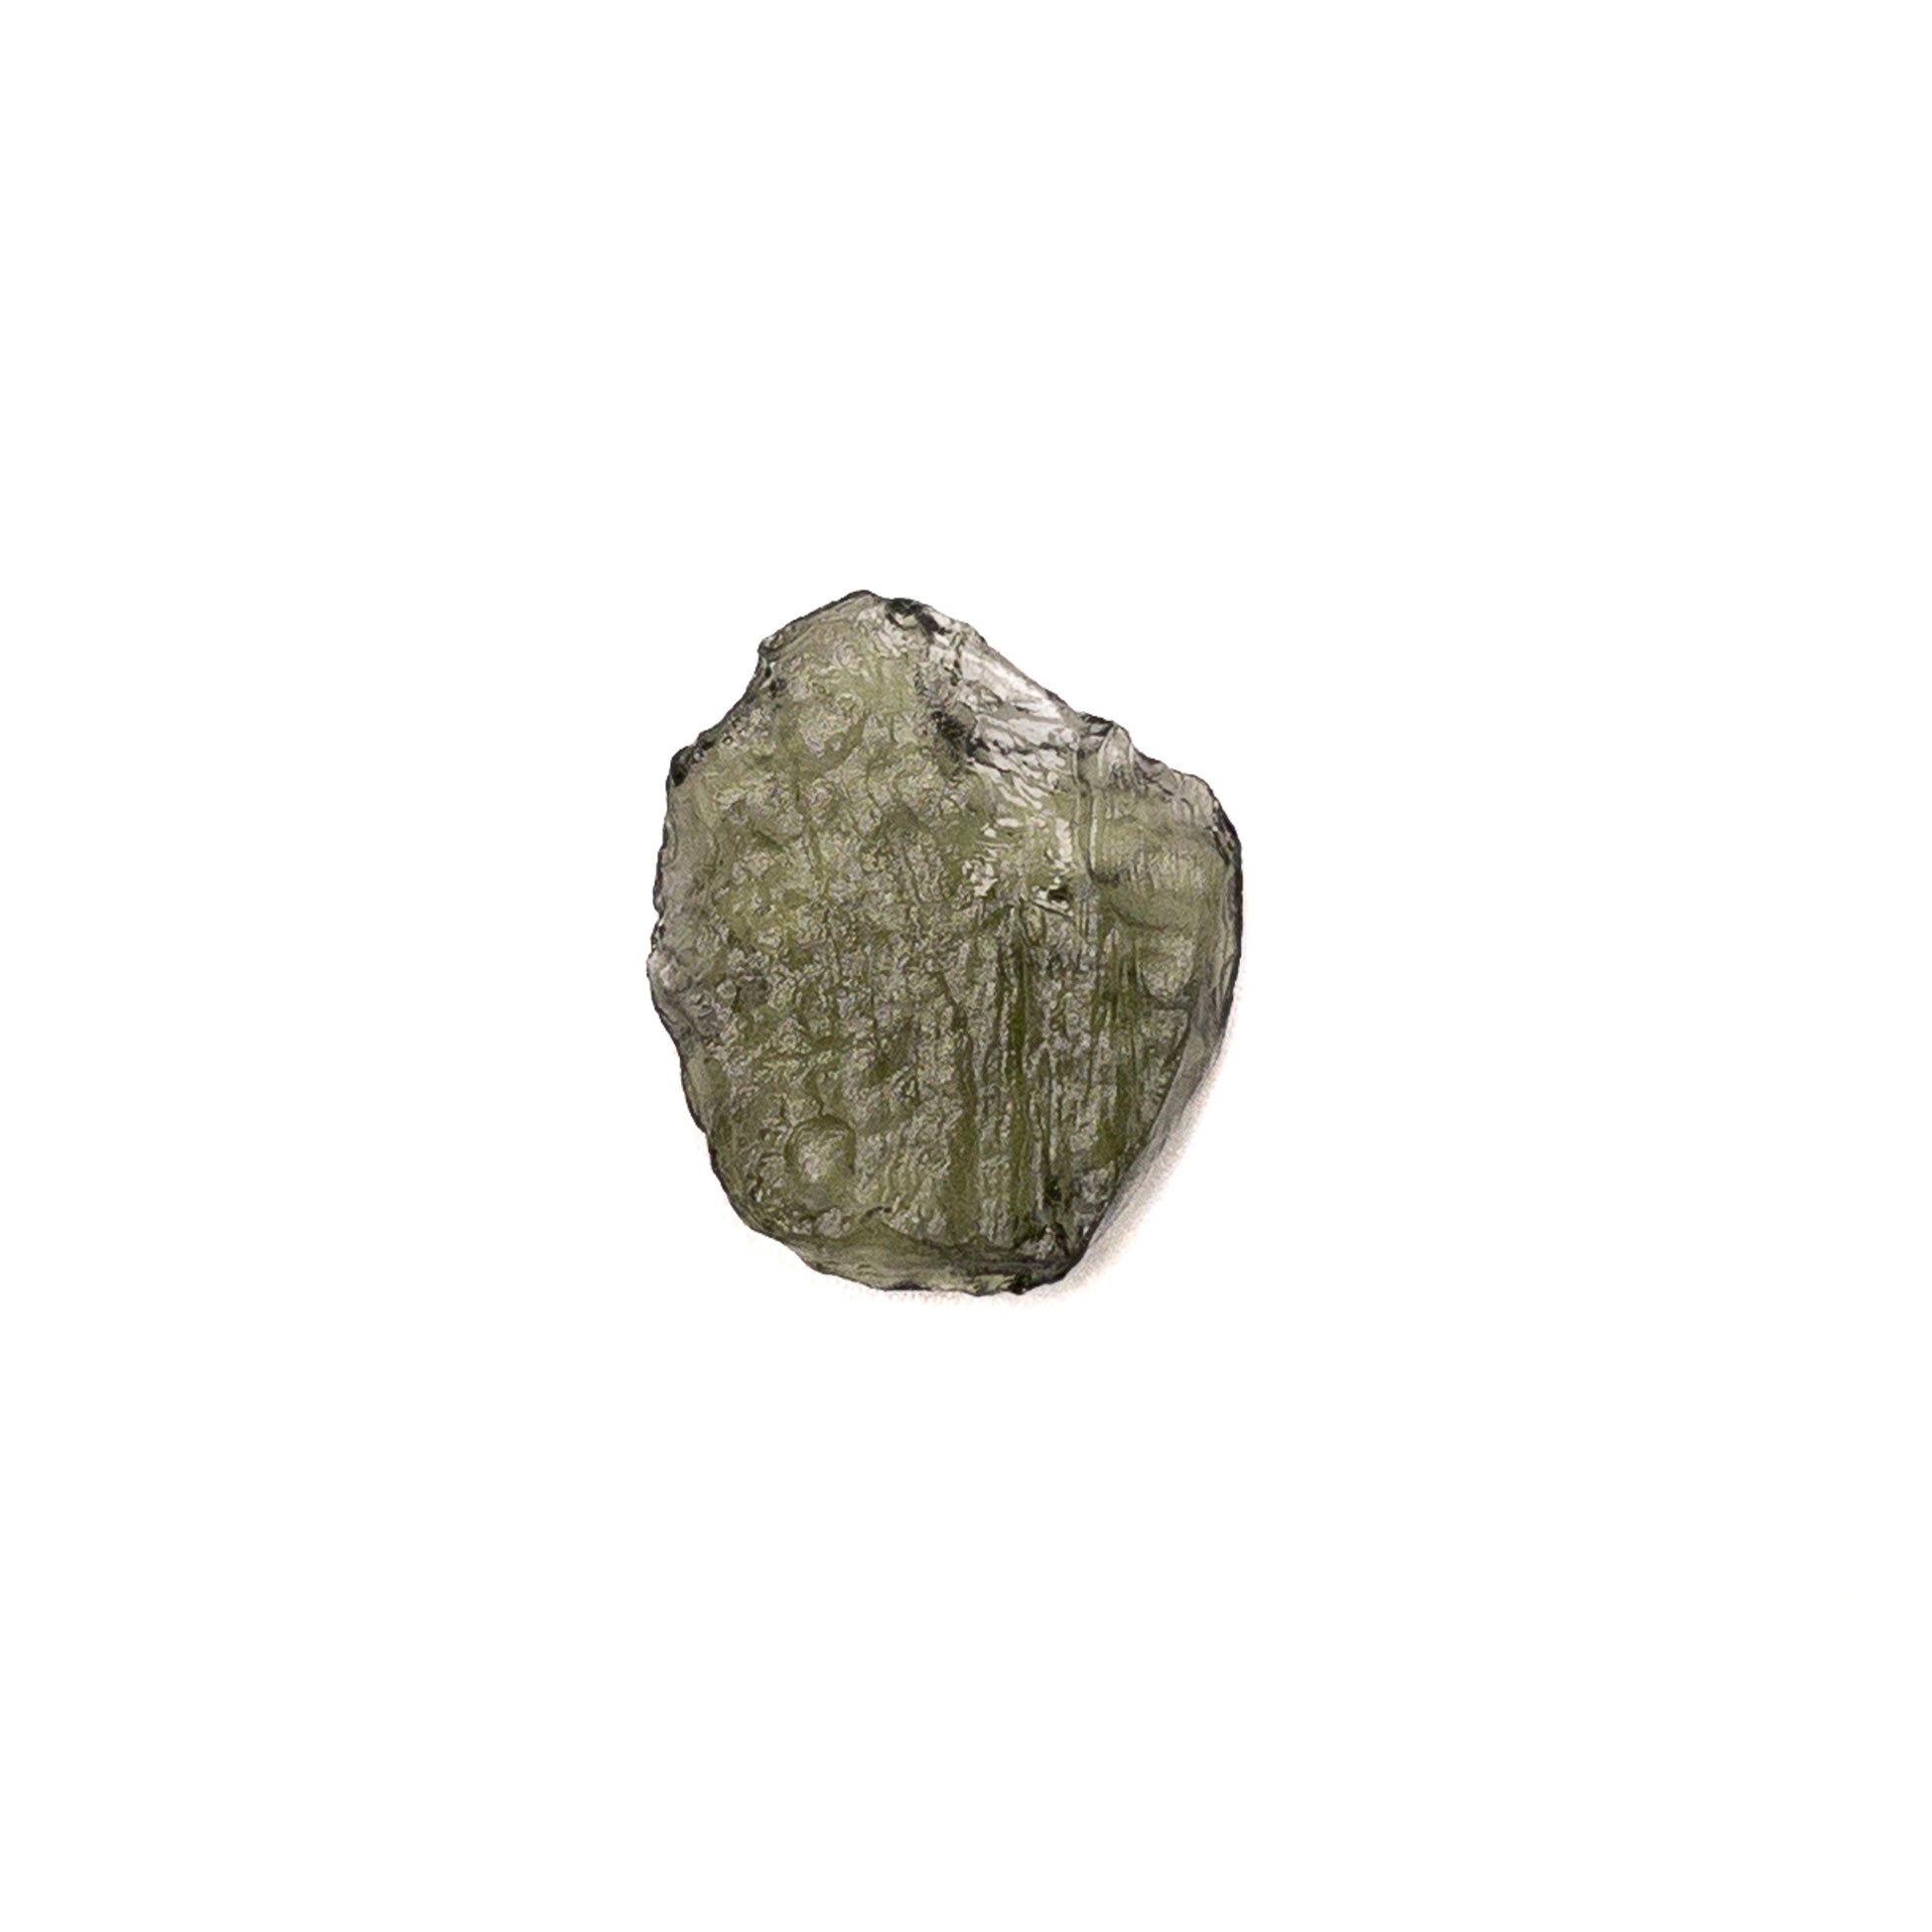 Moldavite Medium Rough Chip Specimen - 1 pc.